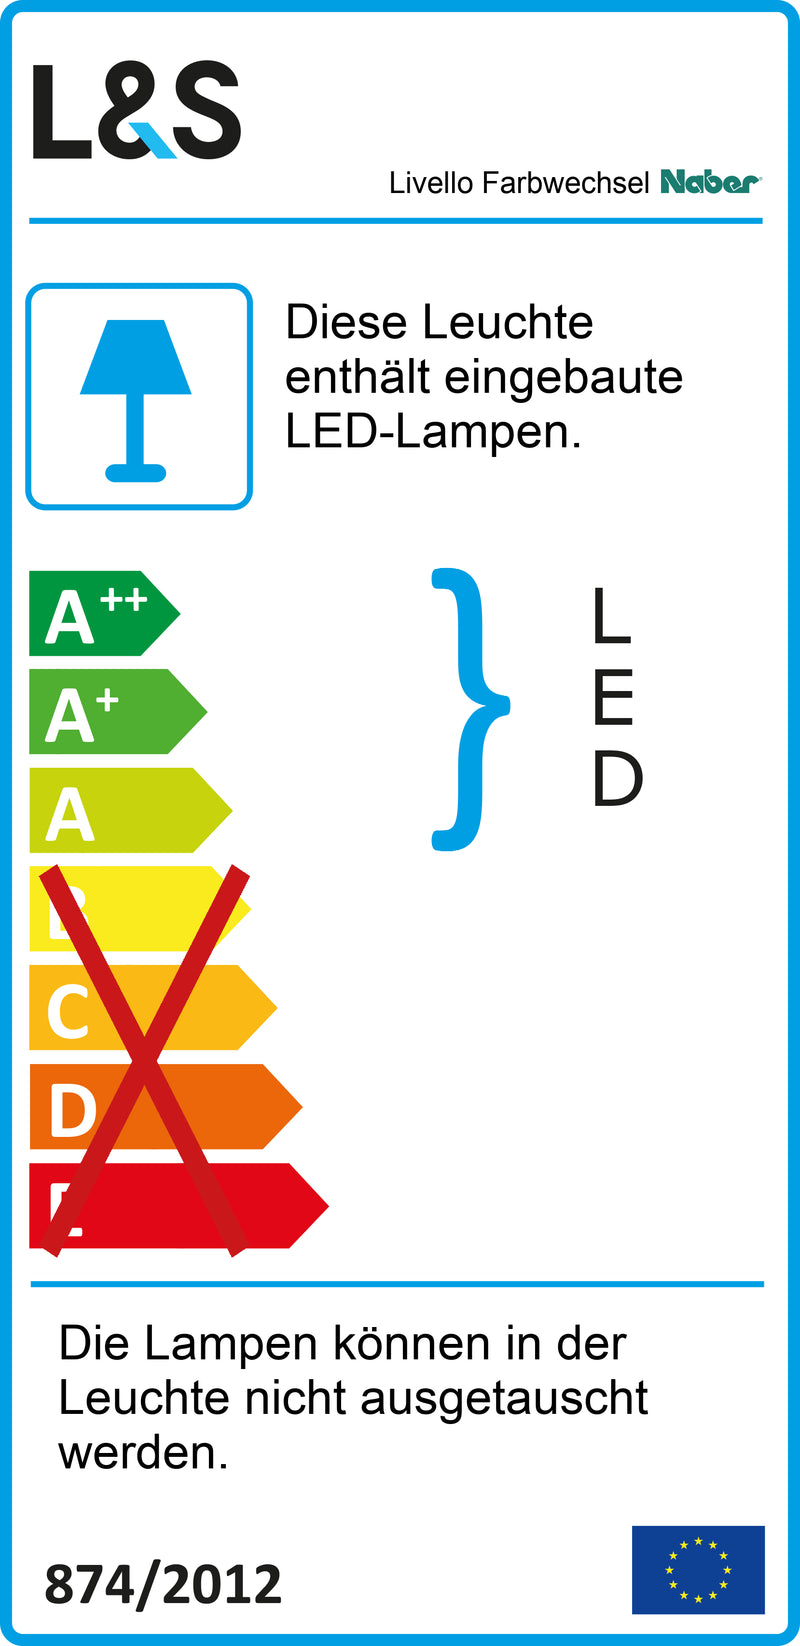 E-Label zu Zeichnung zu Livello Farbwechsel LED als Variante Einzelleuchte mit Schalter, alufarbig von Naber GmbH in der Kategorie Lichttechnik in Österreich auf conceptshop.at